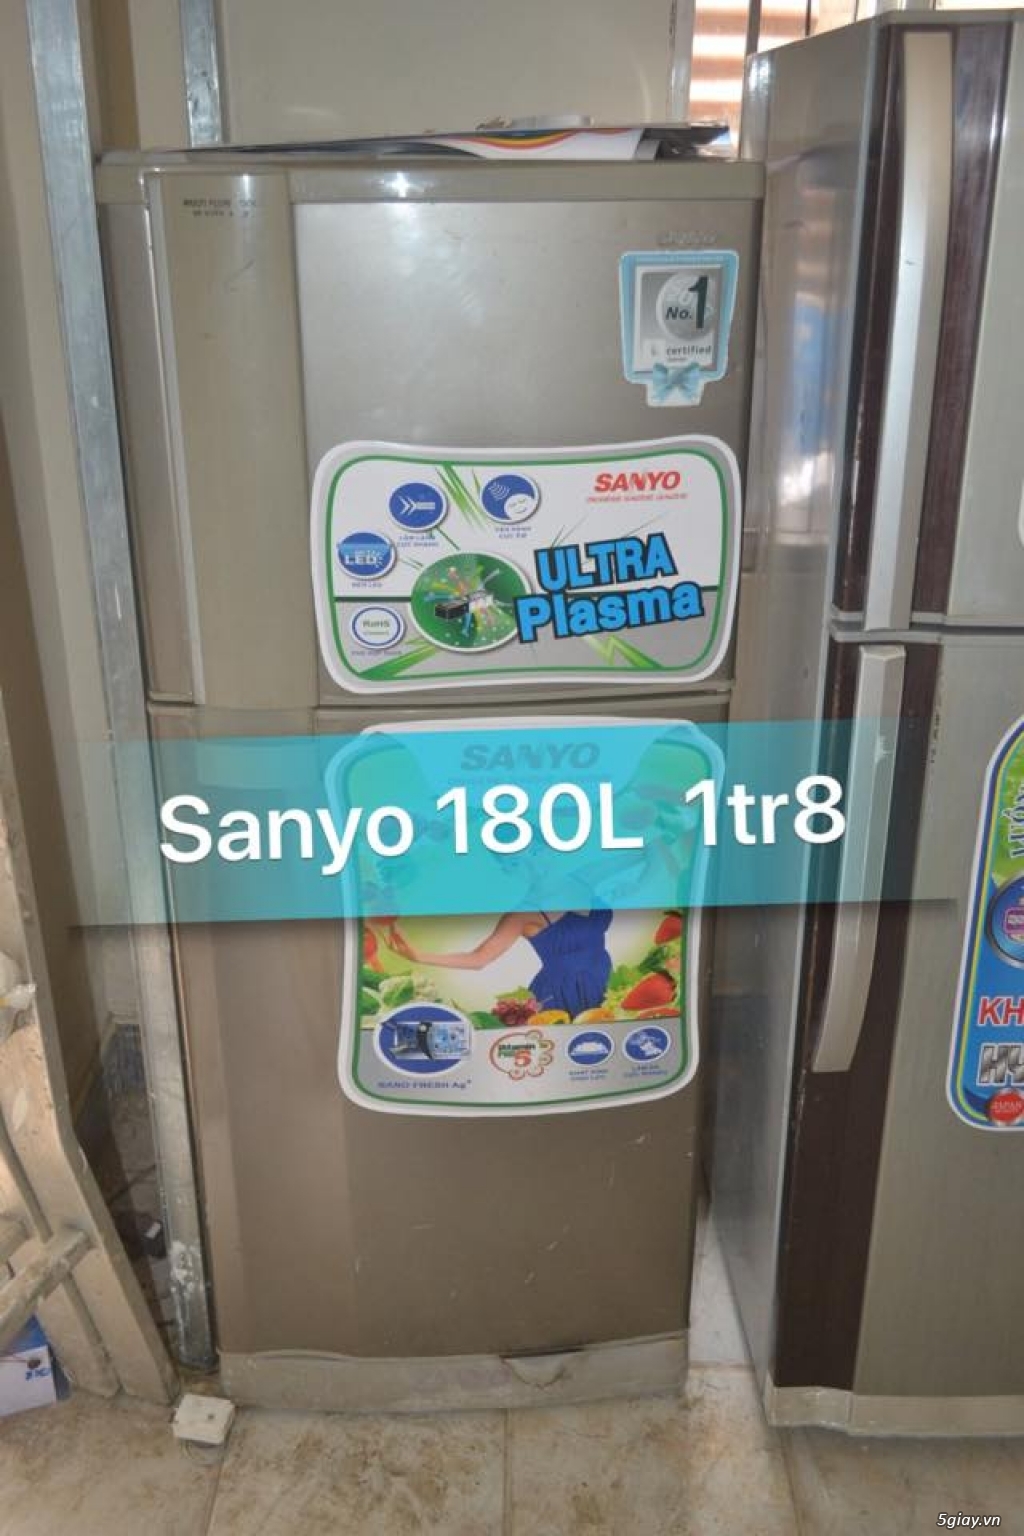 Thanh lý tủ lạnh Sanyo 180L k đông tuyết new 85% zin 100% - 1